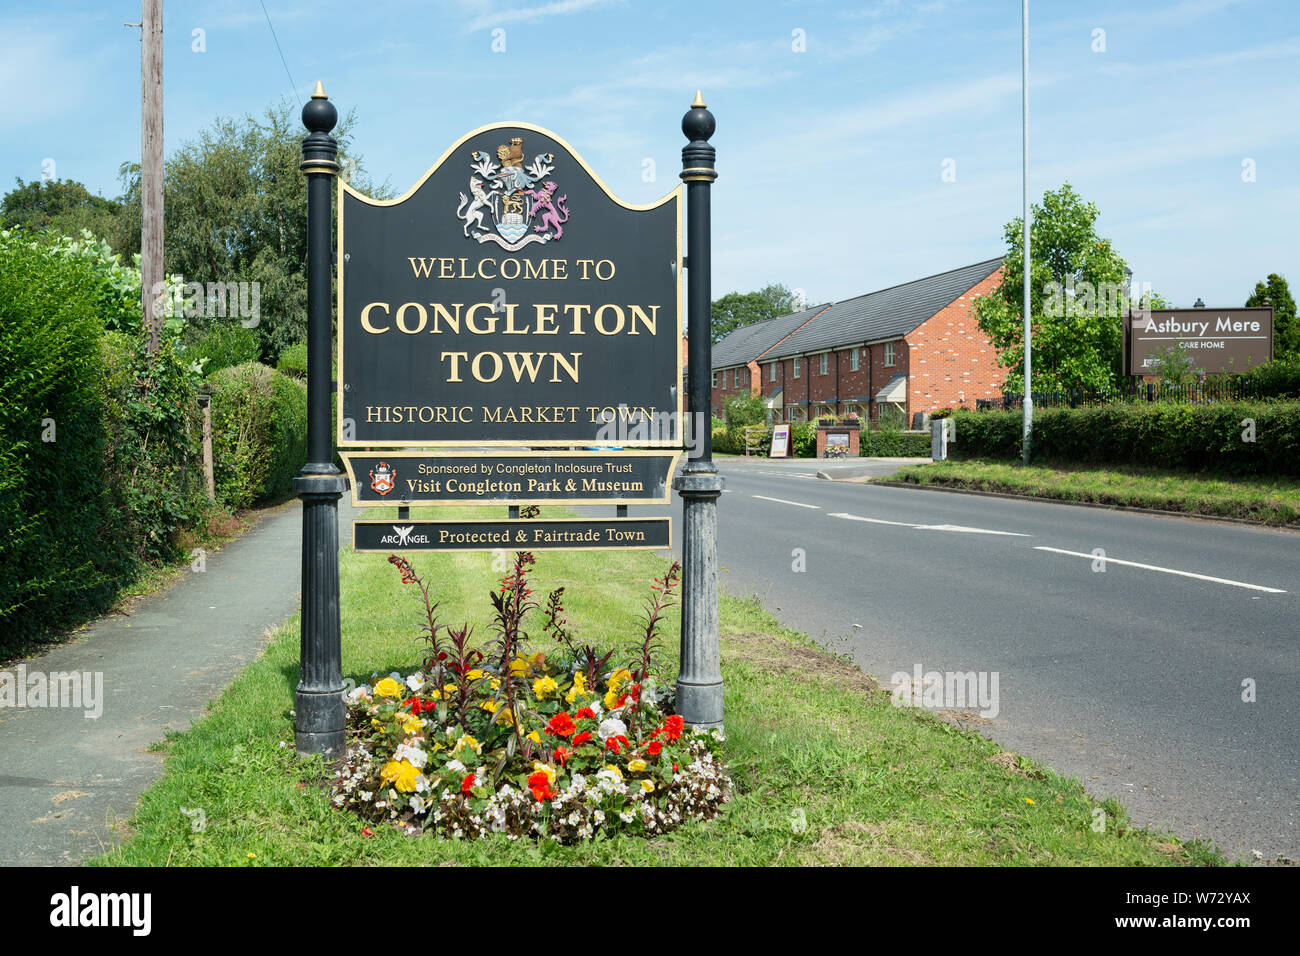 Des gens accueillants à l'affichage dynamique ville de Congleton, Cheshire, Royaume-Uni. Banque D'Images